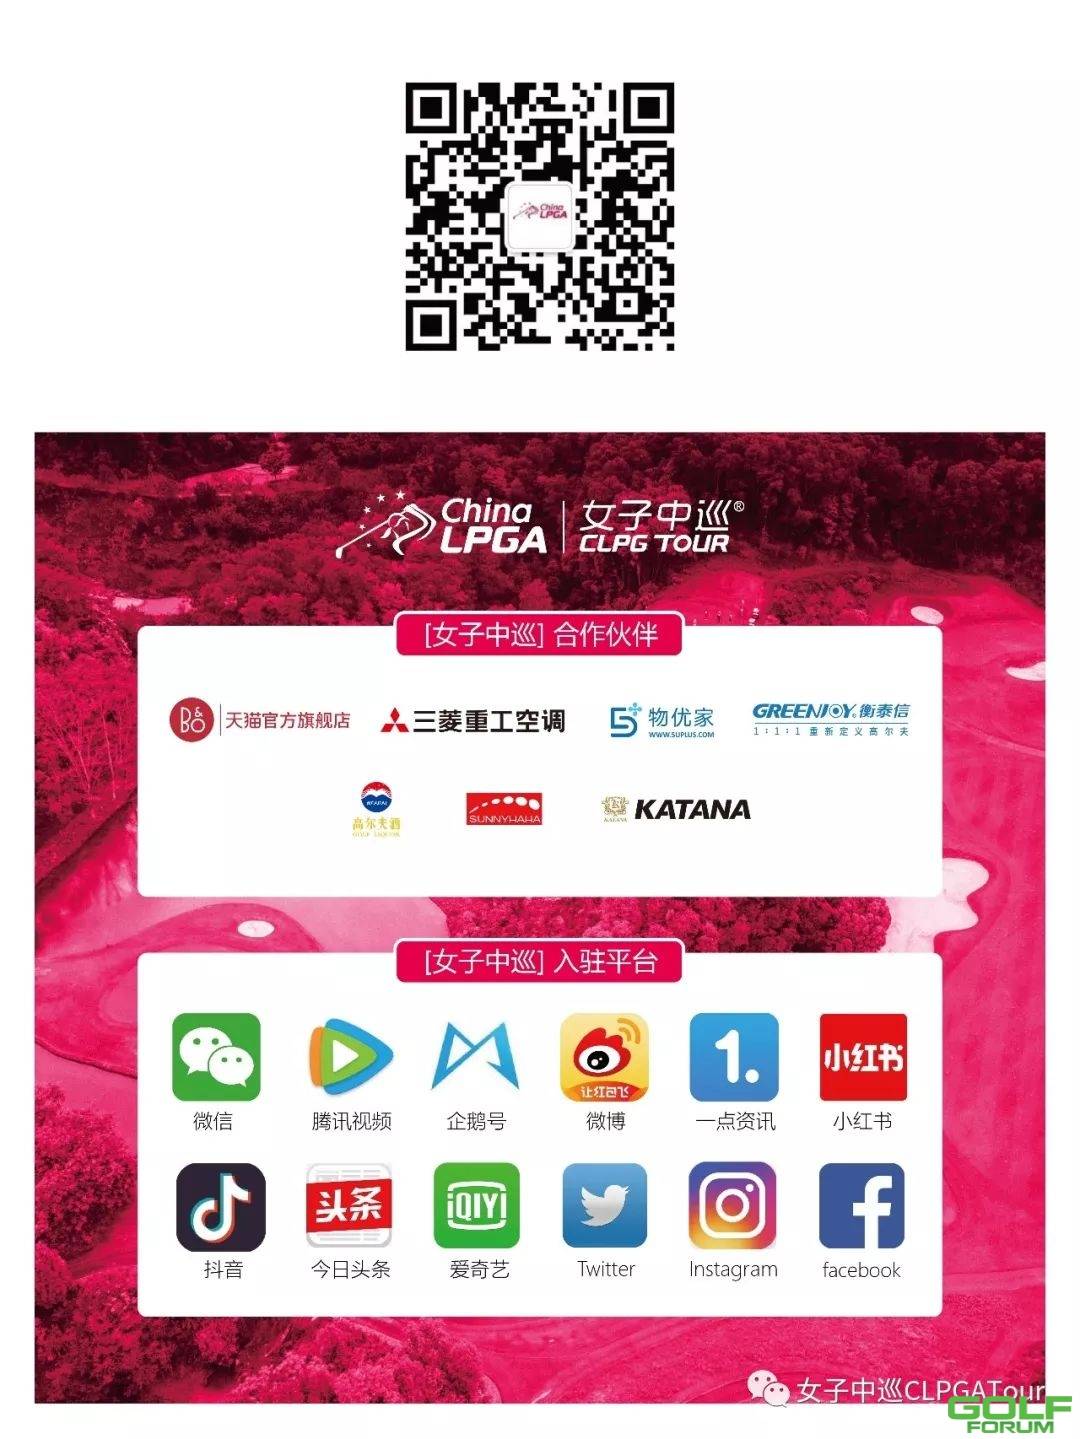 通知|中高协公布2019别克LPGA锦标赛中国参赛运动员名单 ...